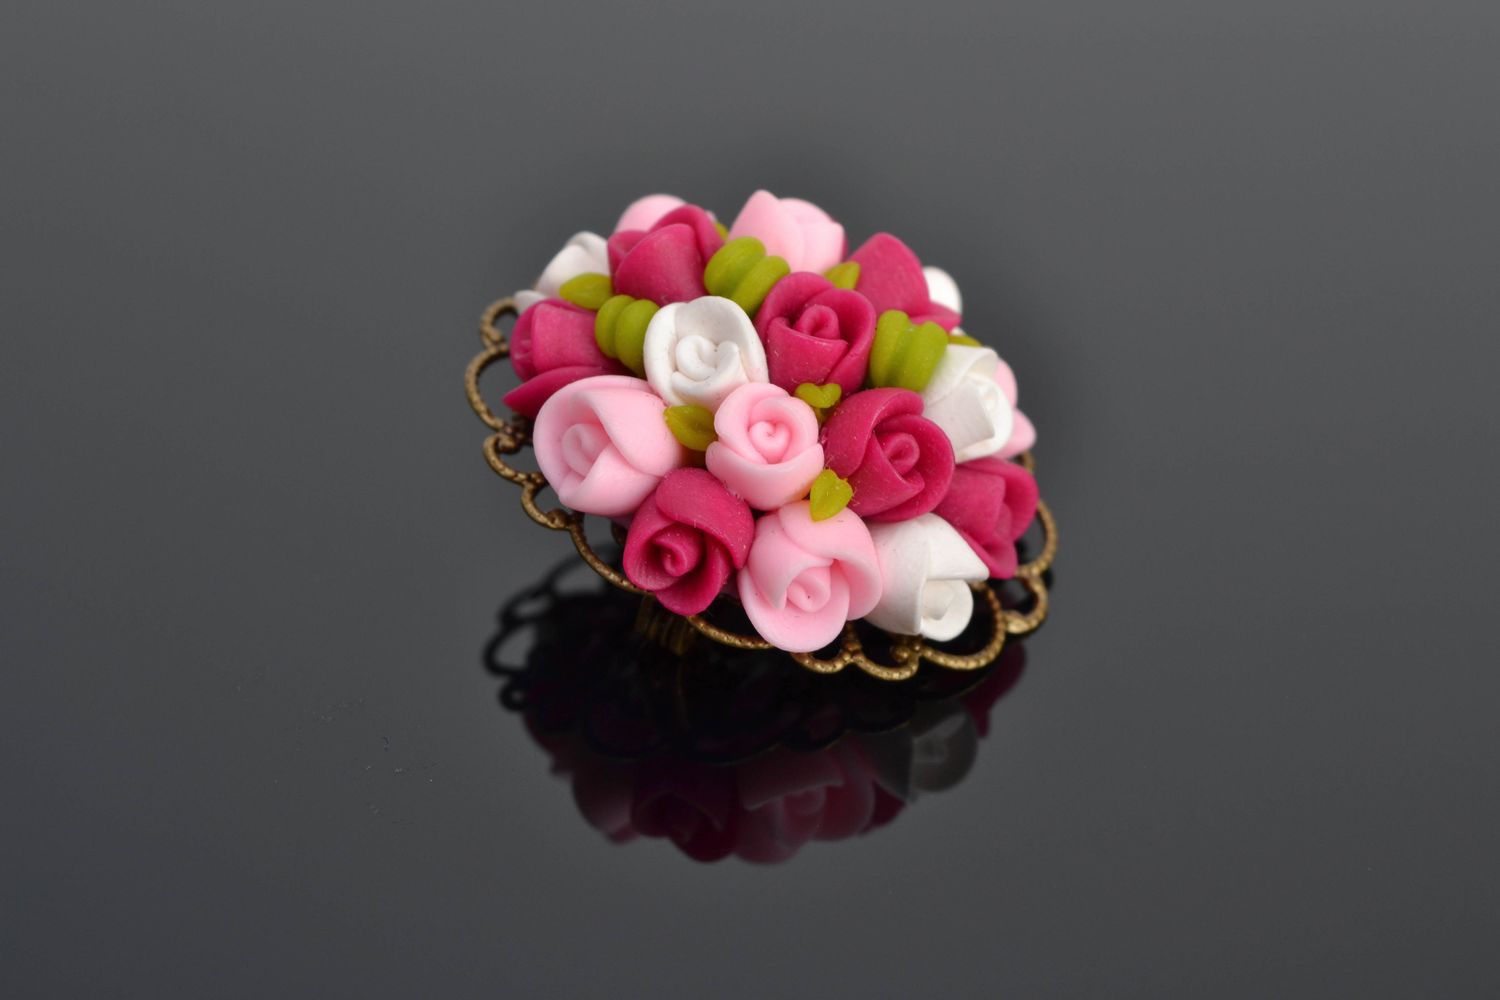 Broche artesanal con rosas de arcilla polimérica foto 1